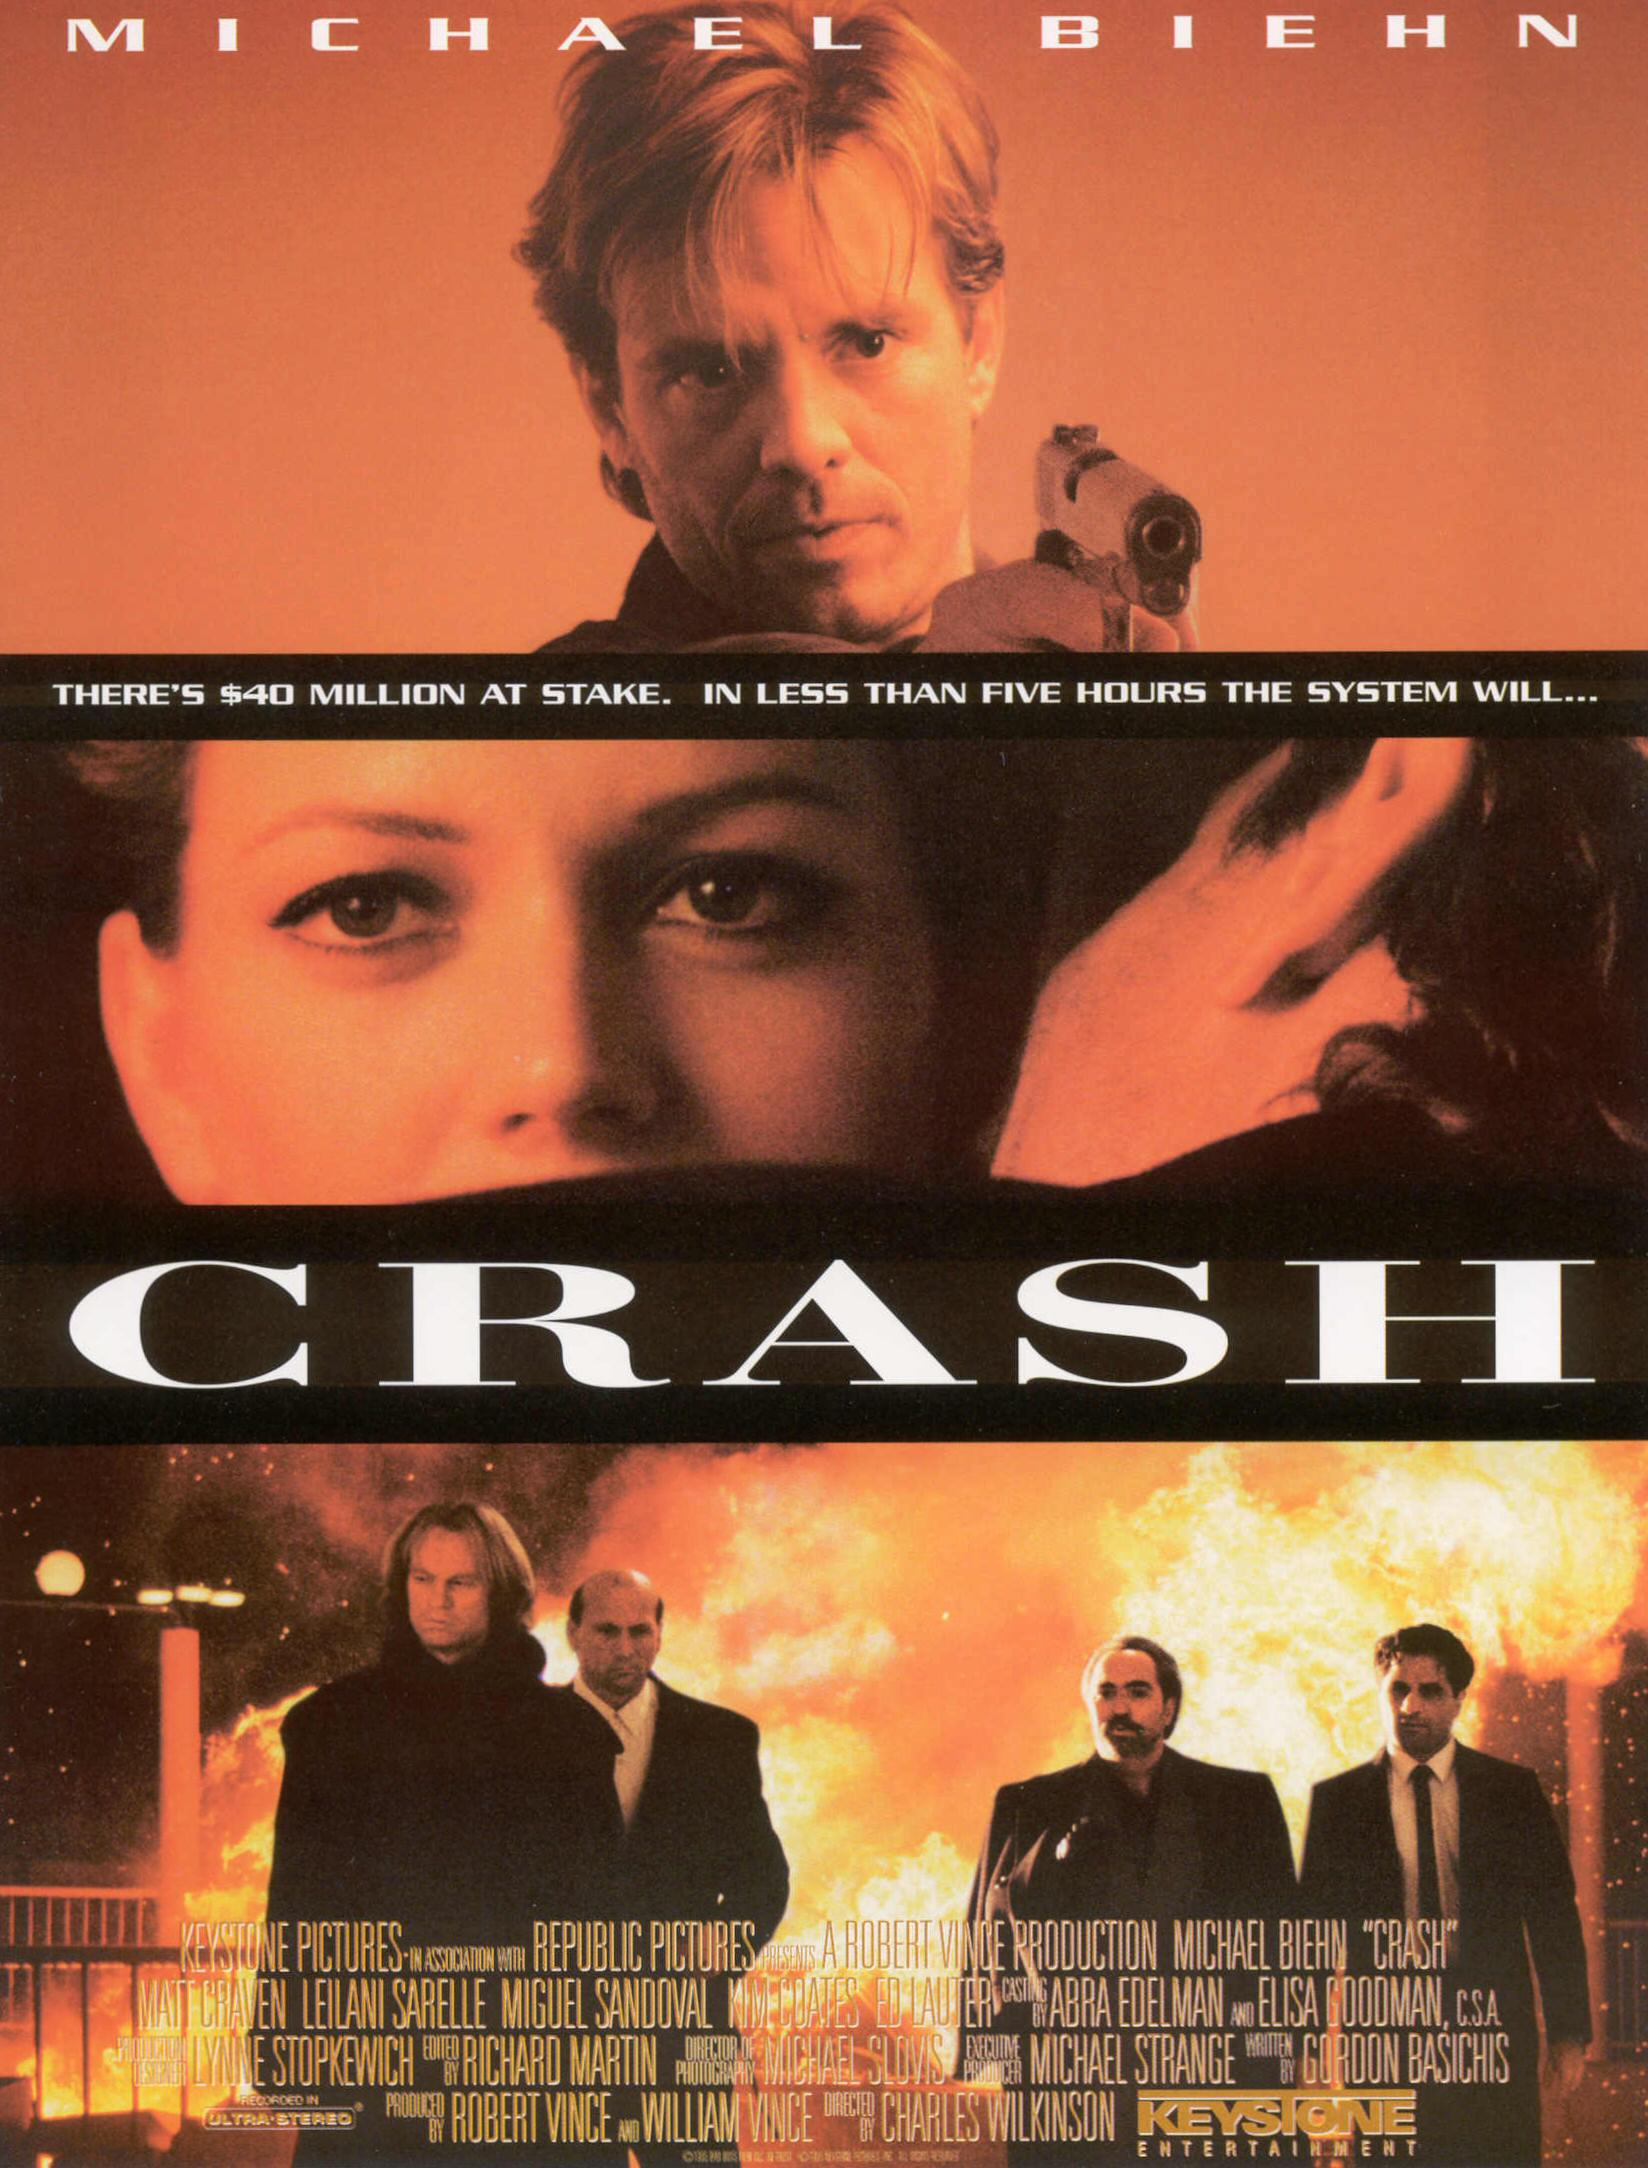 Crash - Video Poster - FRONT
Keywords: ;media_promotion;media_poster